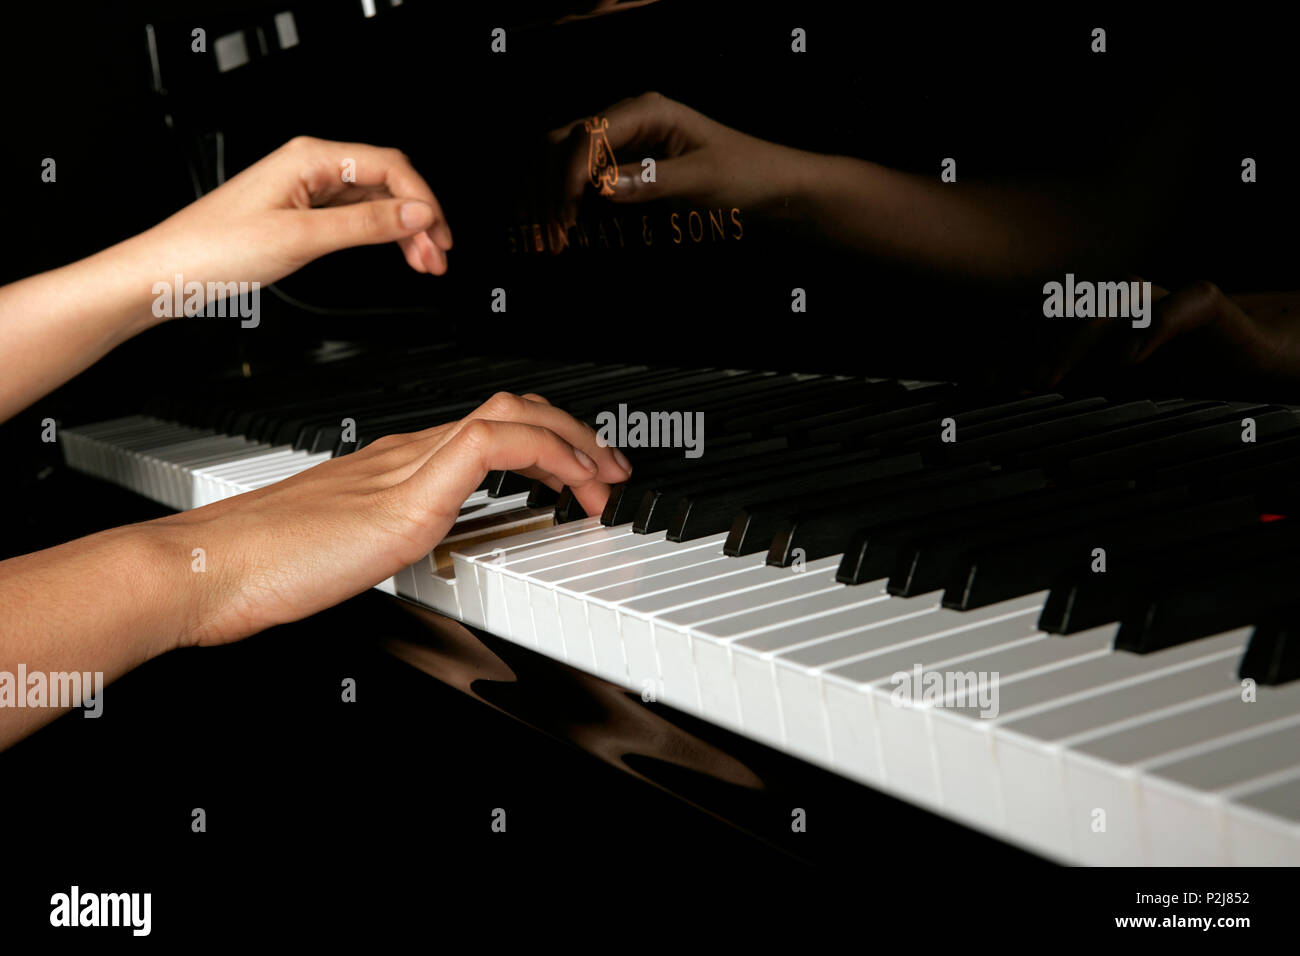 Générique - les mains sur les touches de piano Photo Stock - Alamy